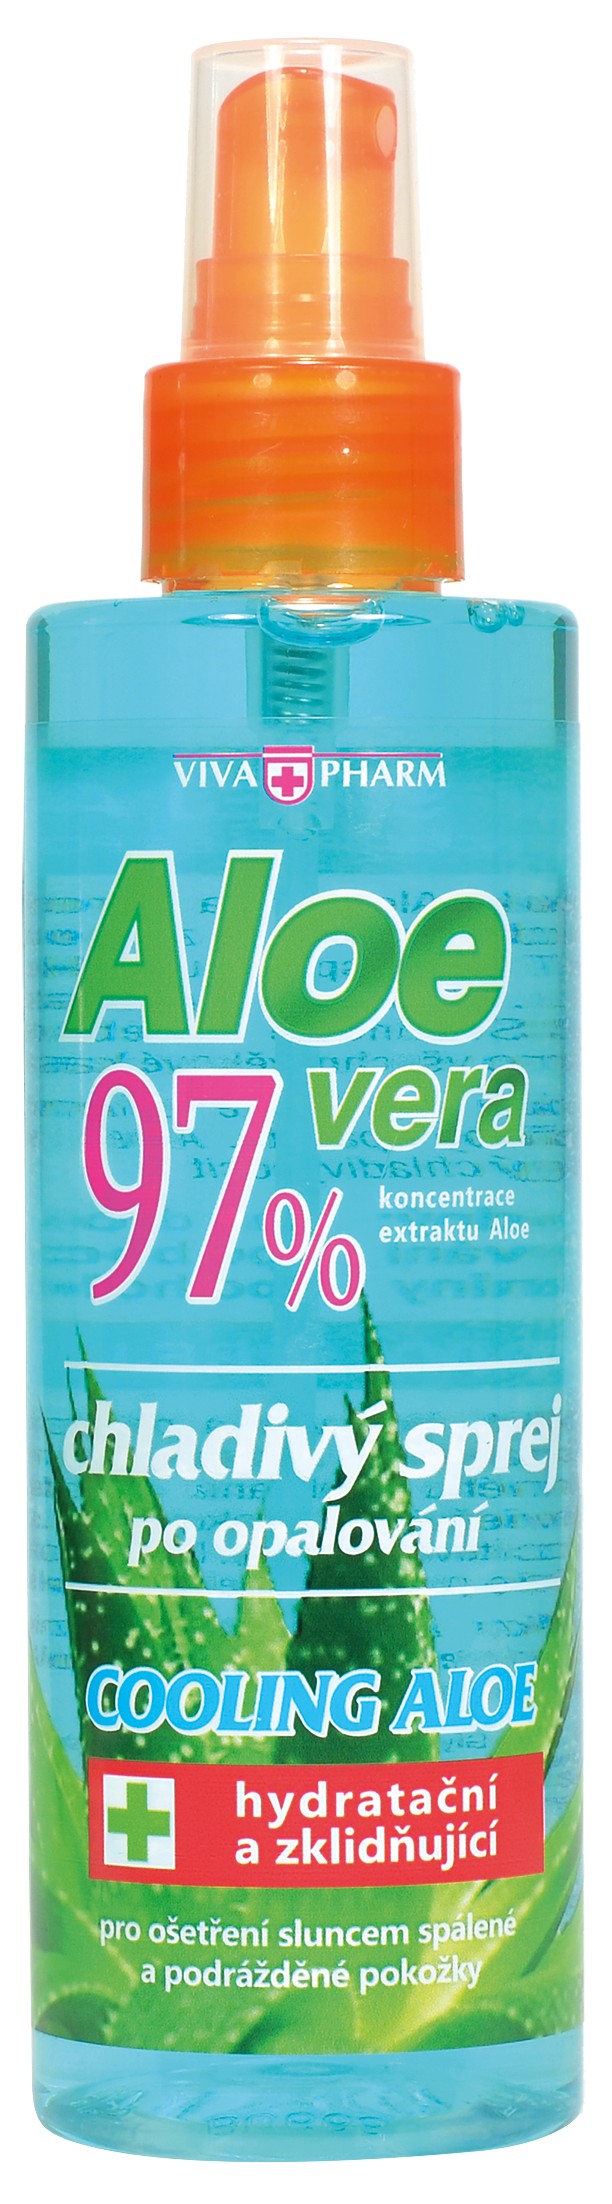 Vivaco Aloe Vera 97% chladivý sprej po opaľovaní 200 ml